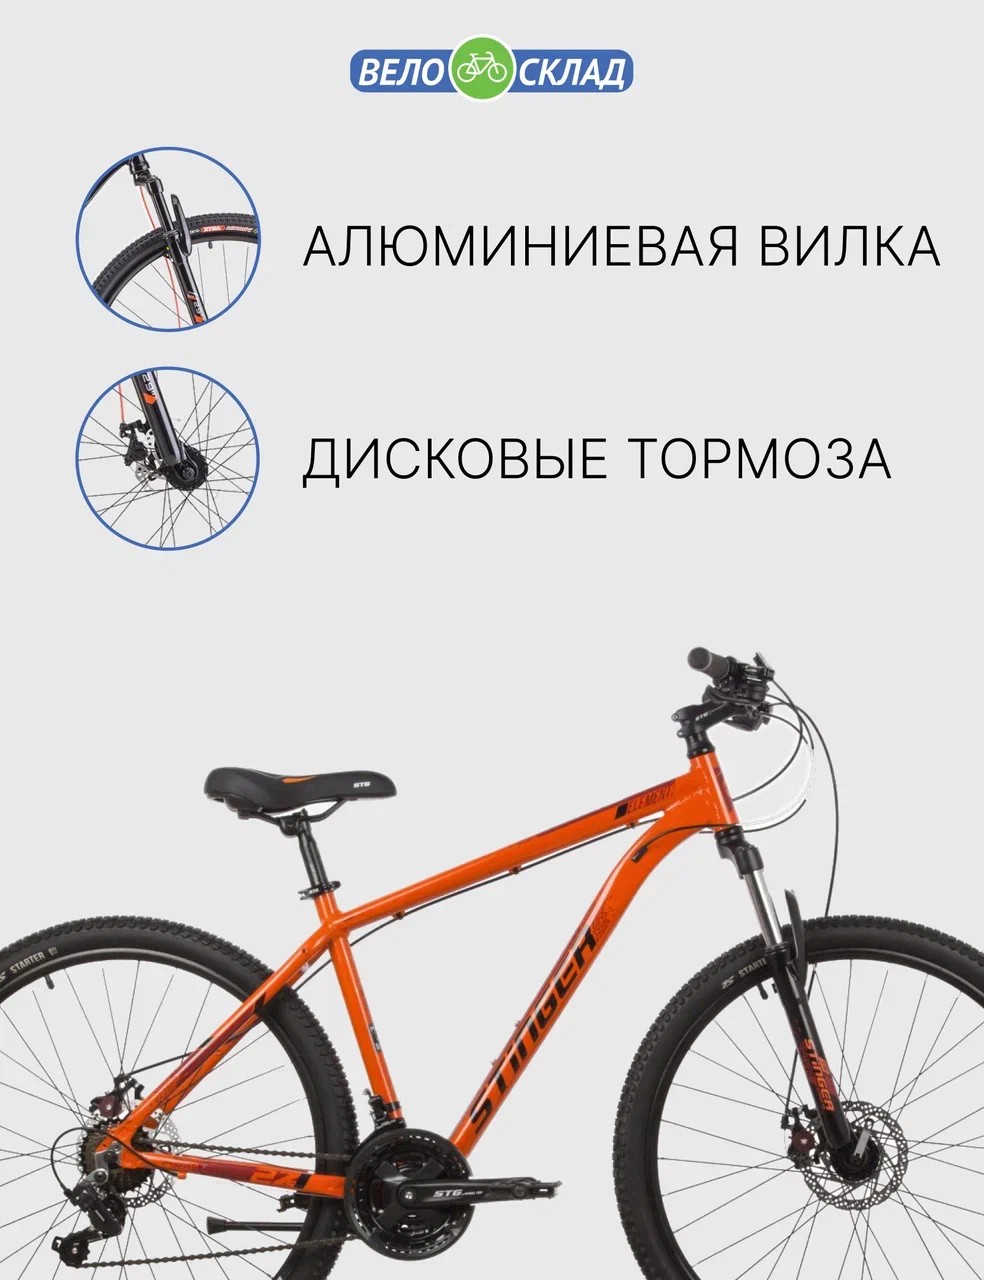 Горный велосипед Stinger Element STD 26, год 2022, цвет Оранжевый, ростовка 18